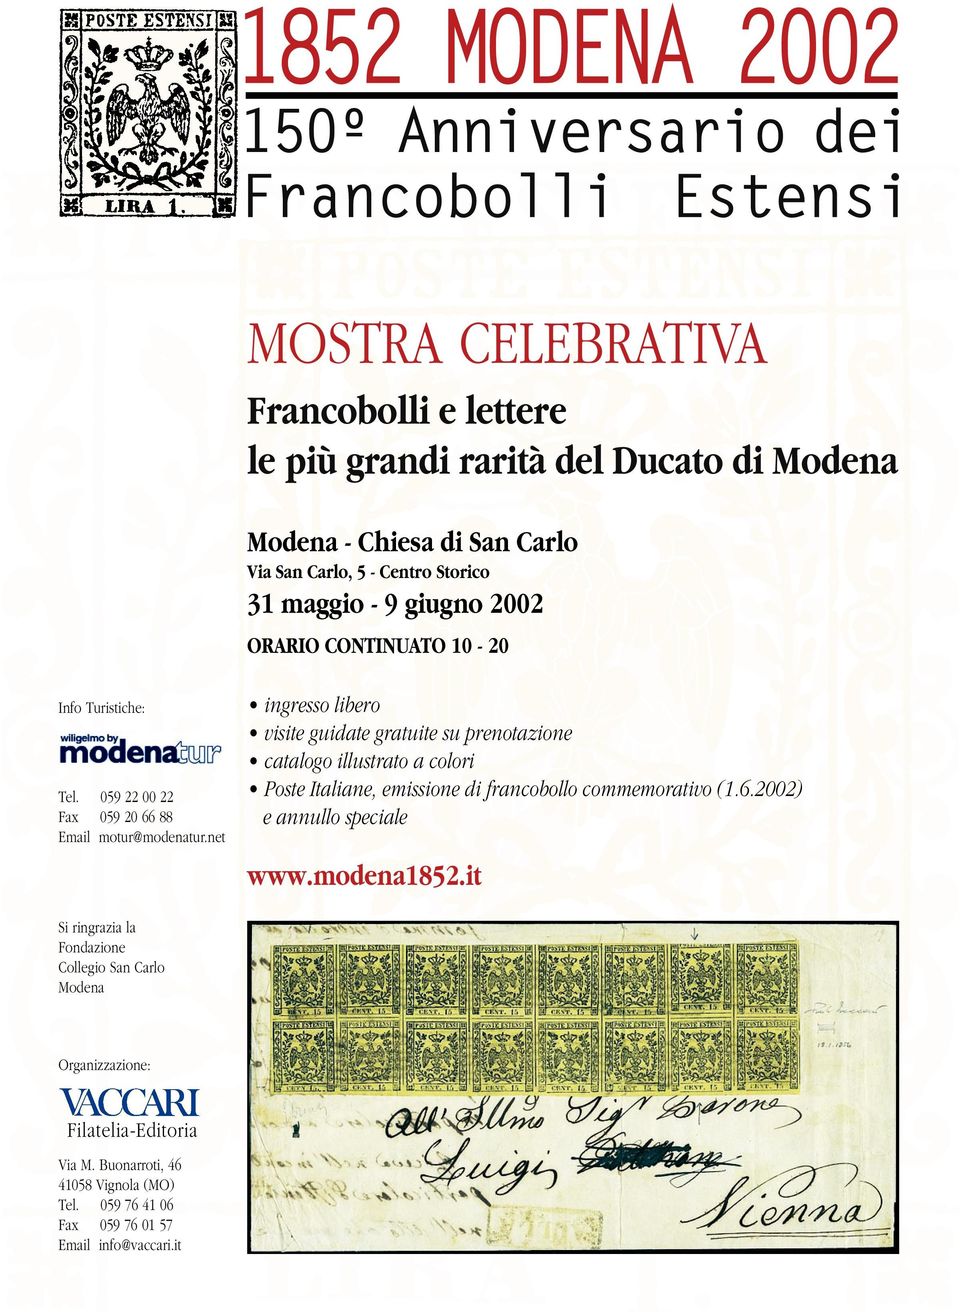 net ingresso libero visite guidate gratuite su prenotazione catalogo illustrato a colori Poste Italiane, emissione di francobollo commemorativo (1.6.